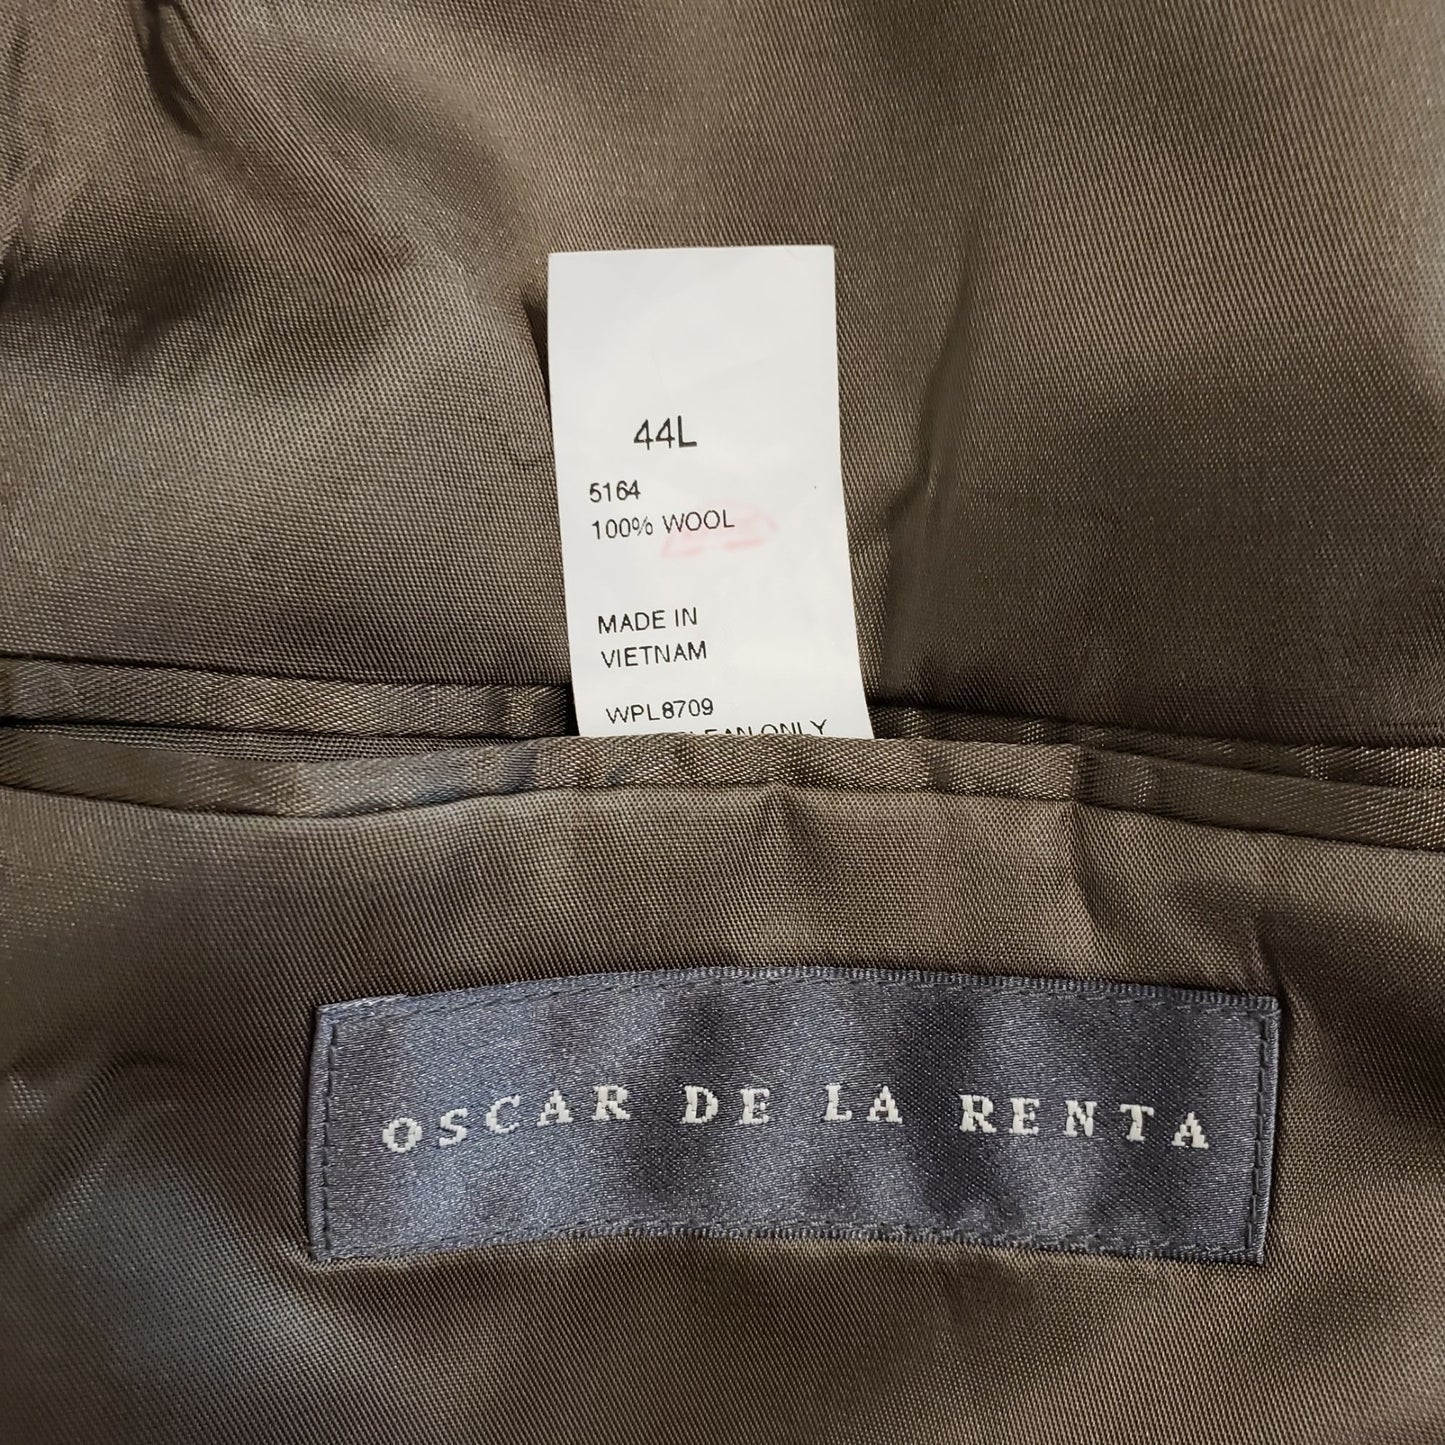 Oscar de la Renta Wool Suit Sport Jacket Size 44L